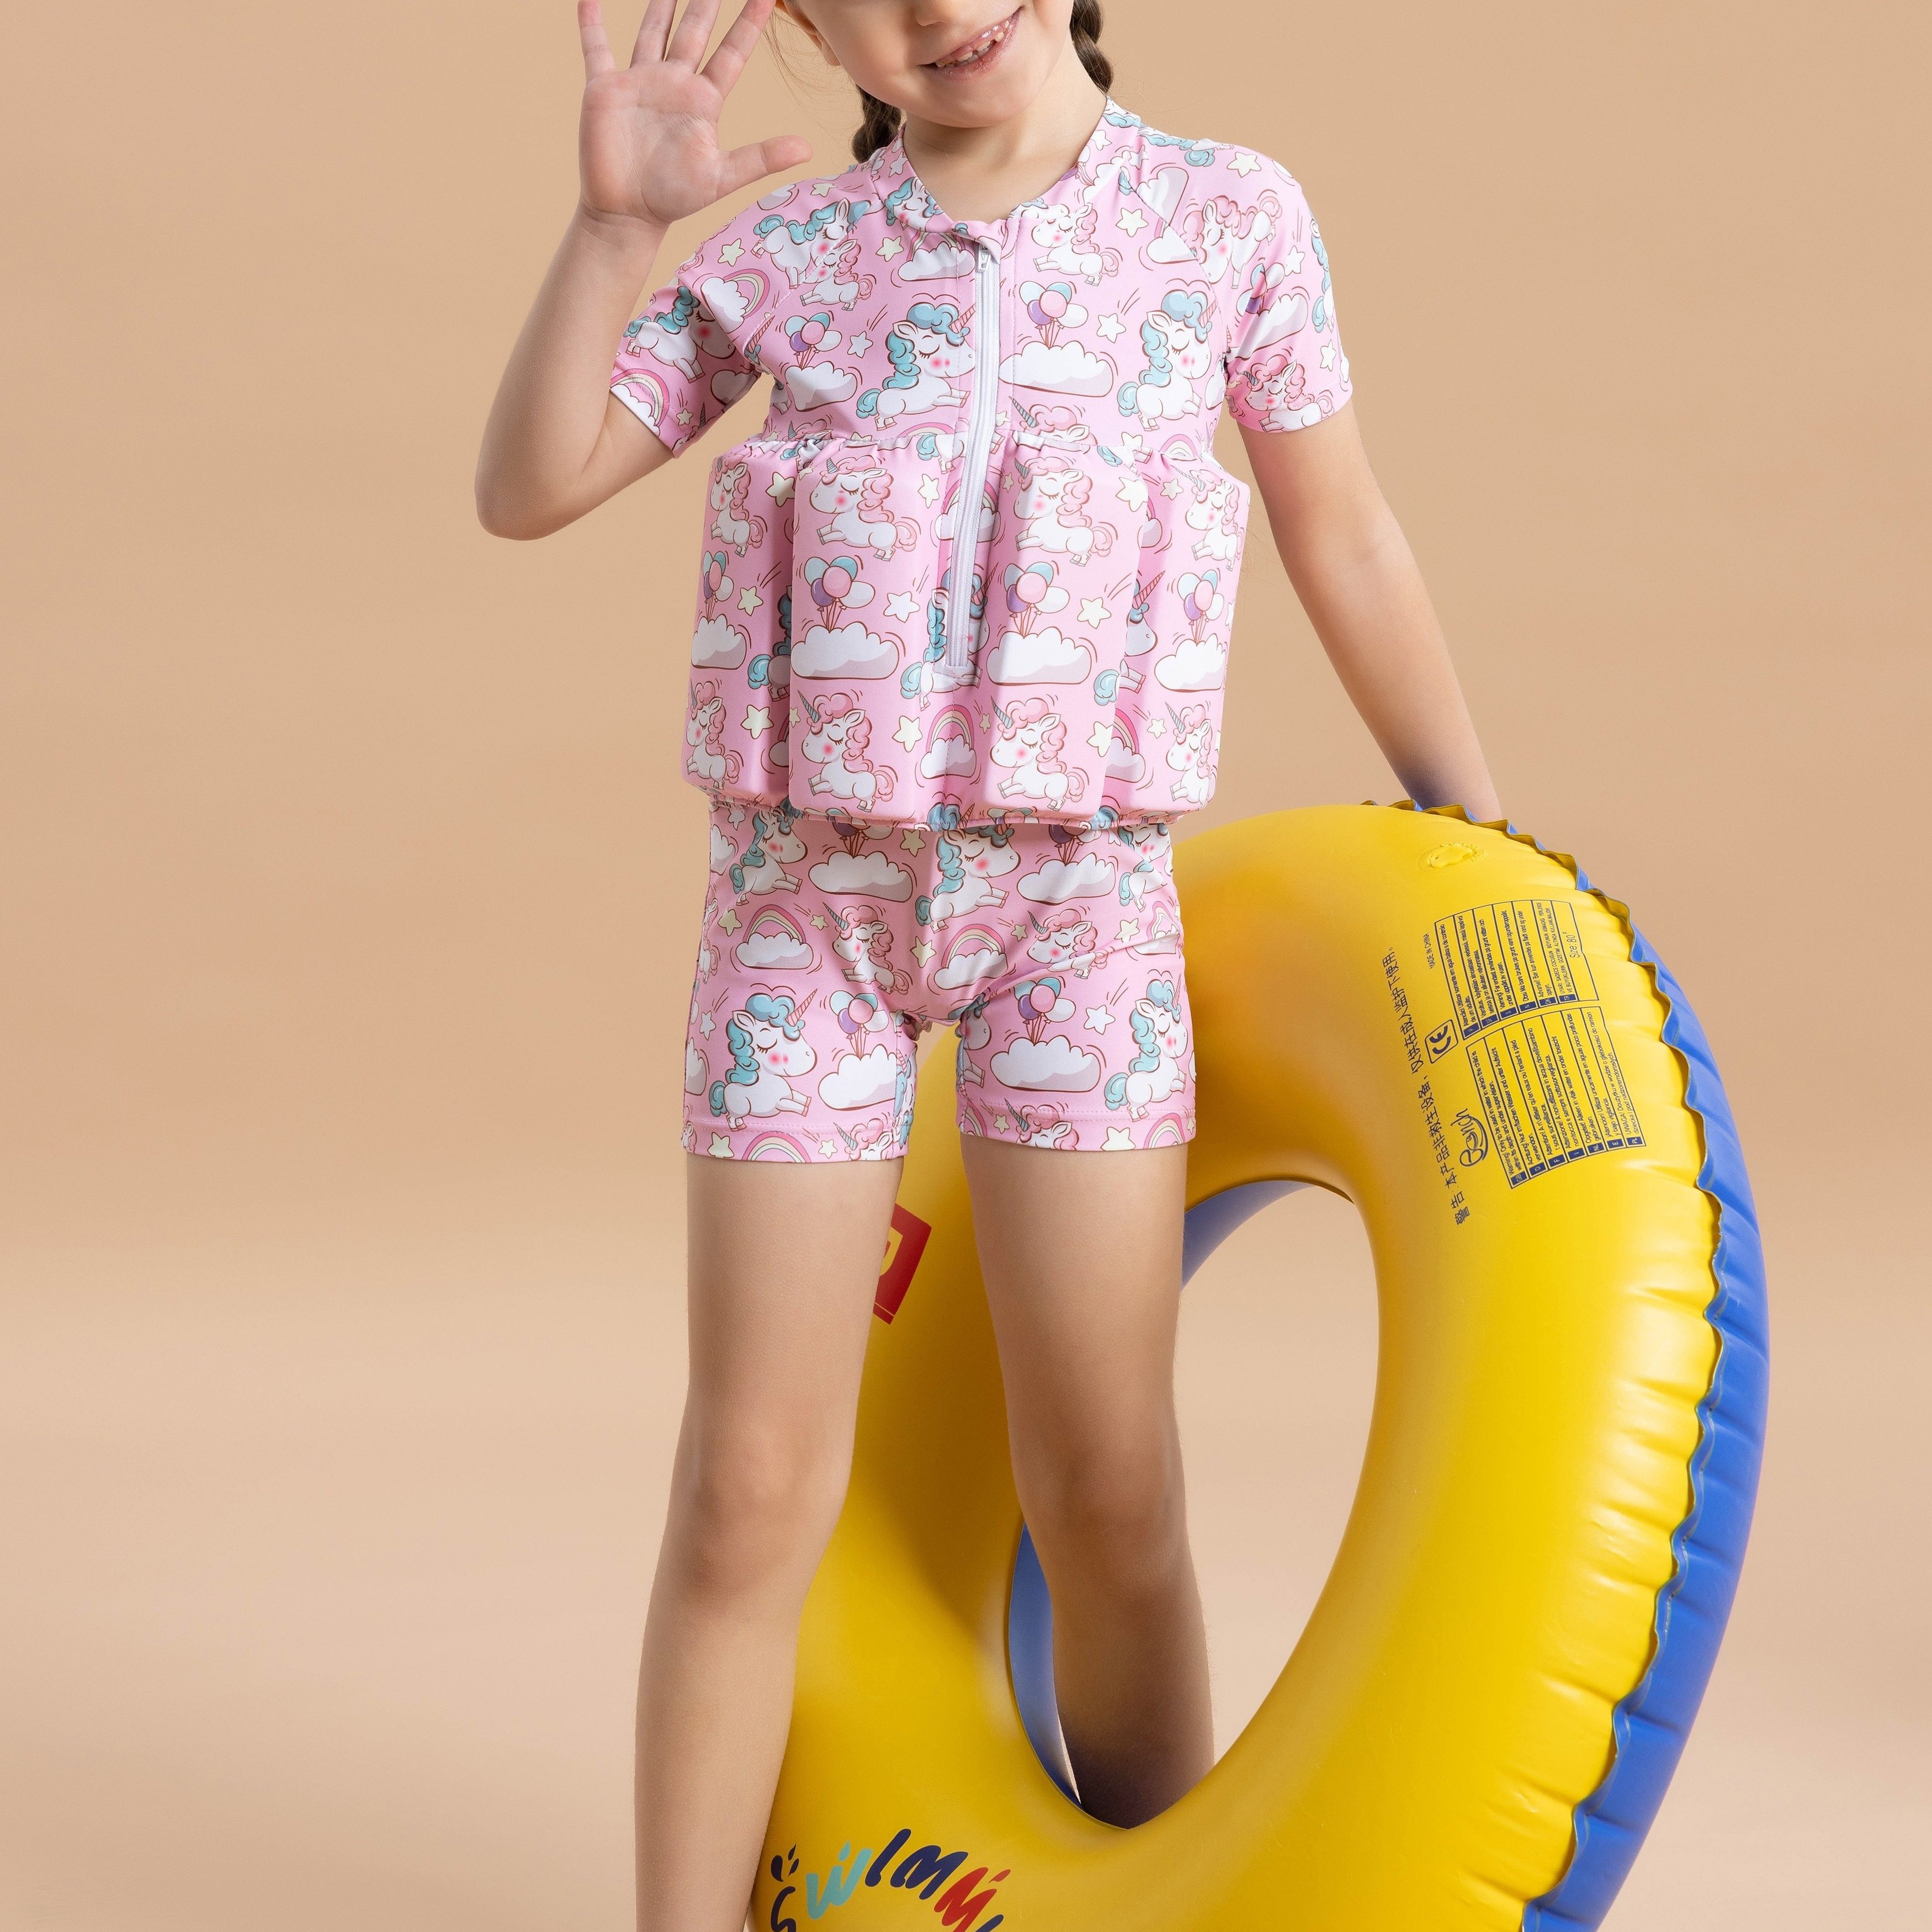 

Maillot de bain une pièce à manches courtes avec imprimé graphique mignon de licorne pour bébés filles avec des vêtements de flottabilité pour l'été